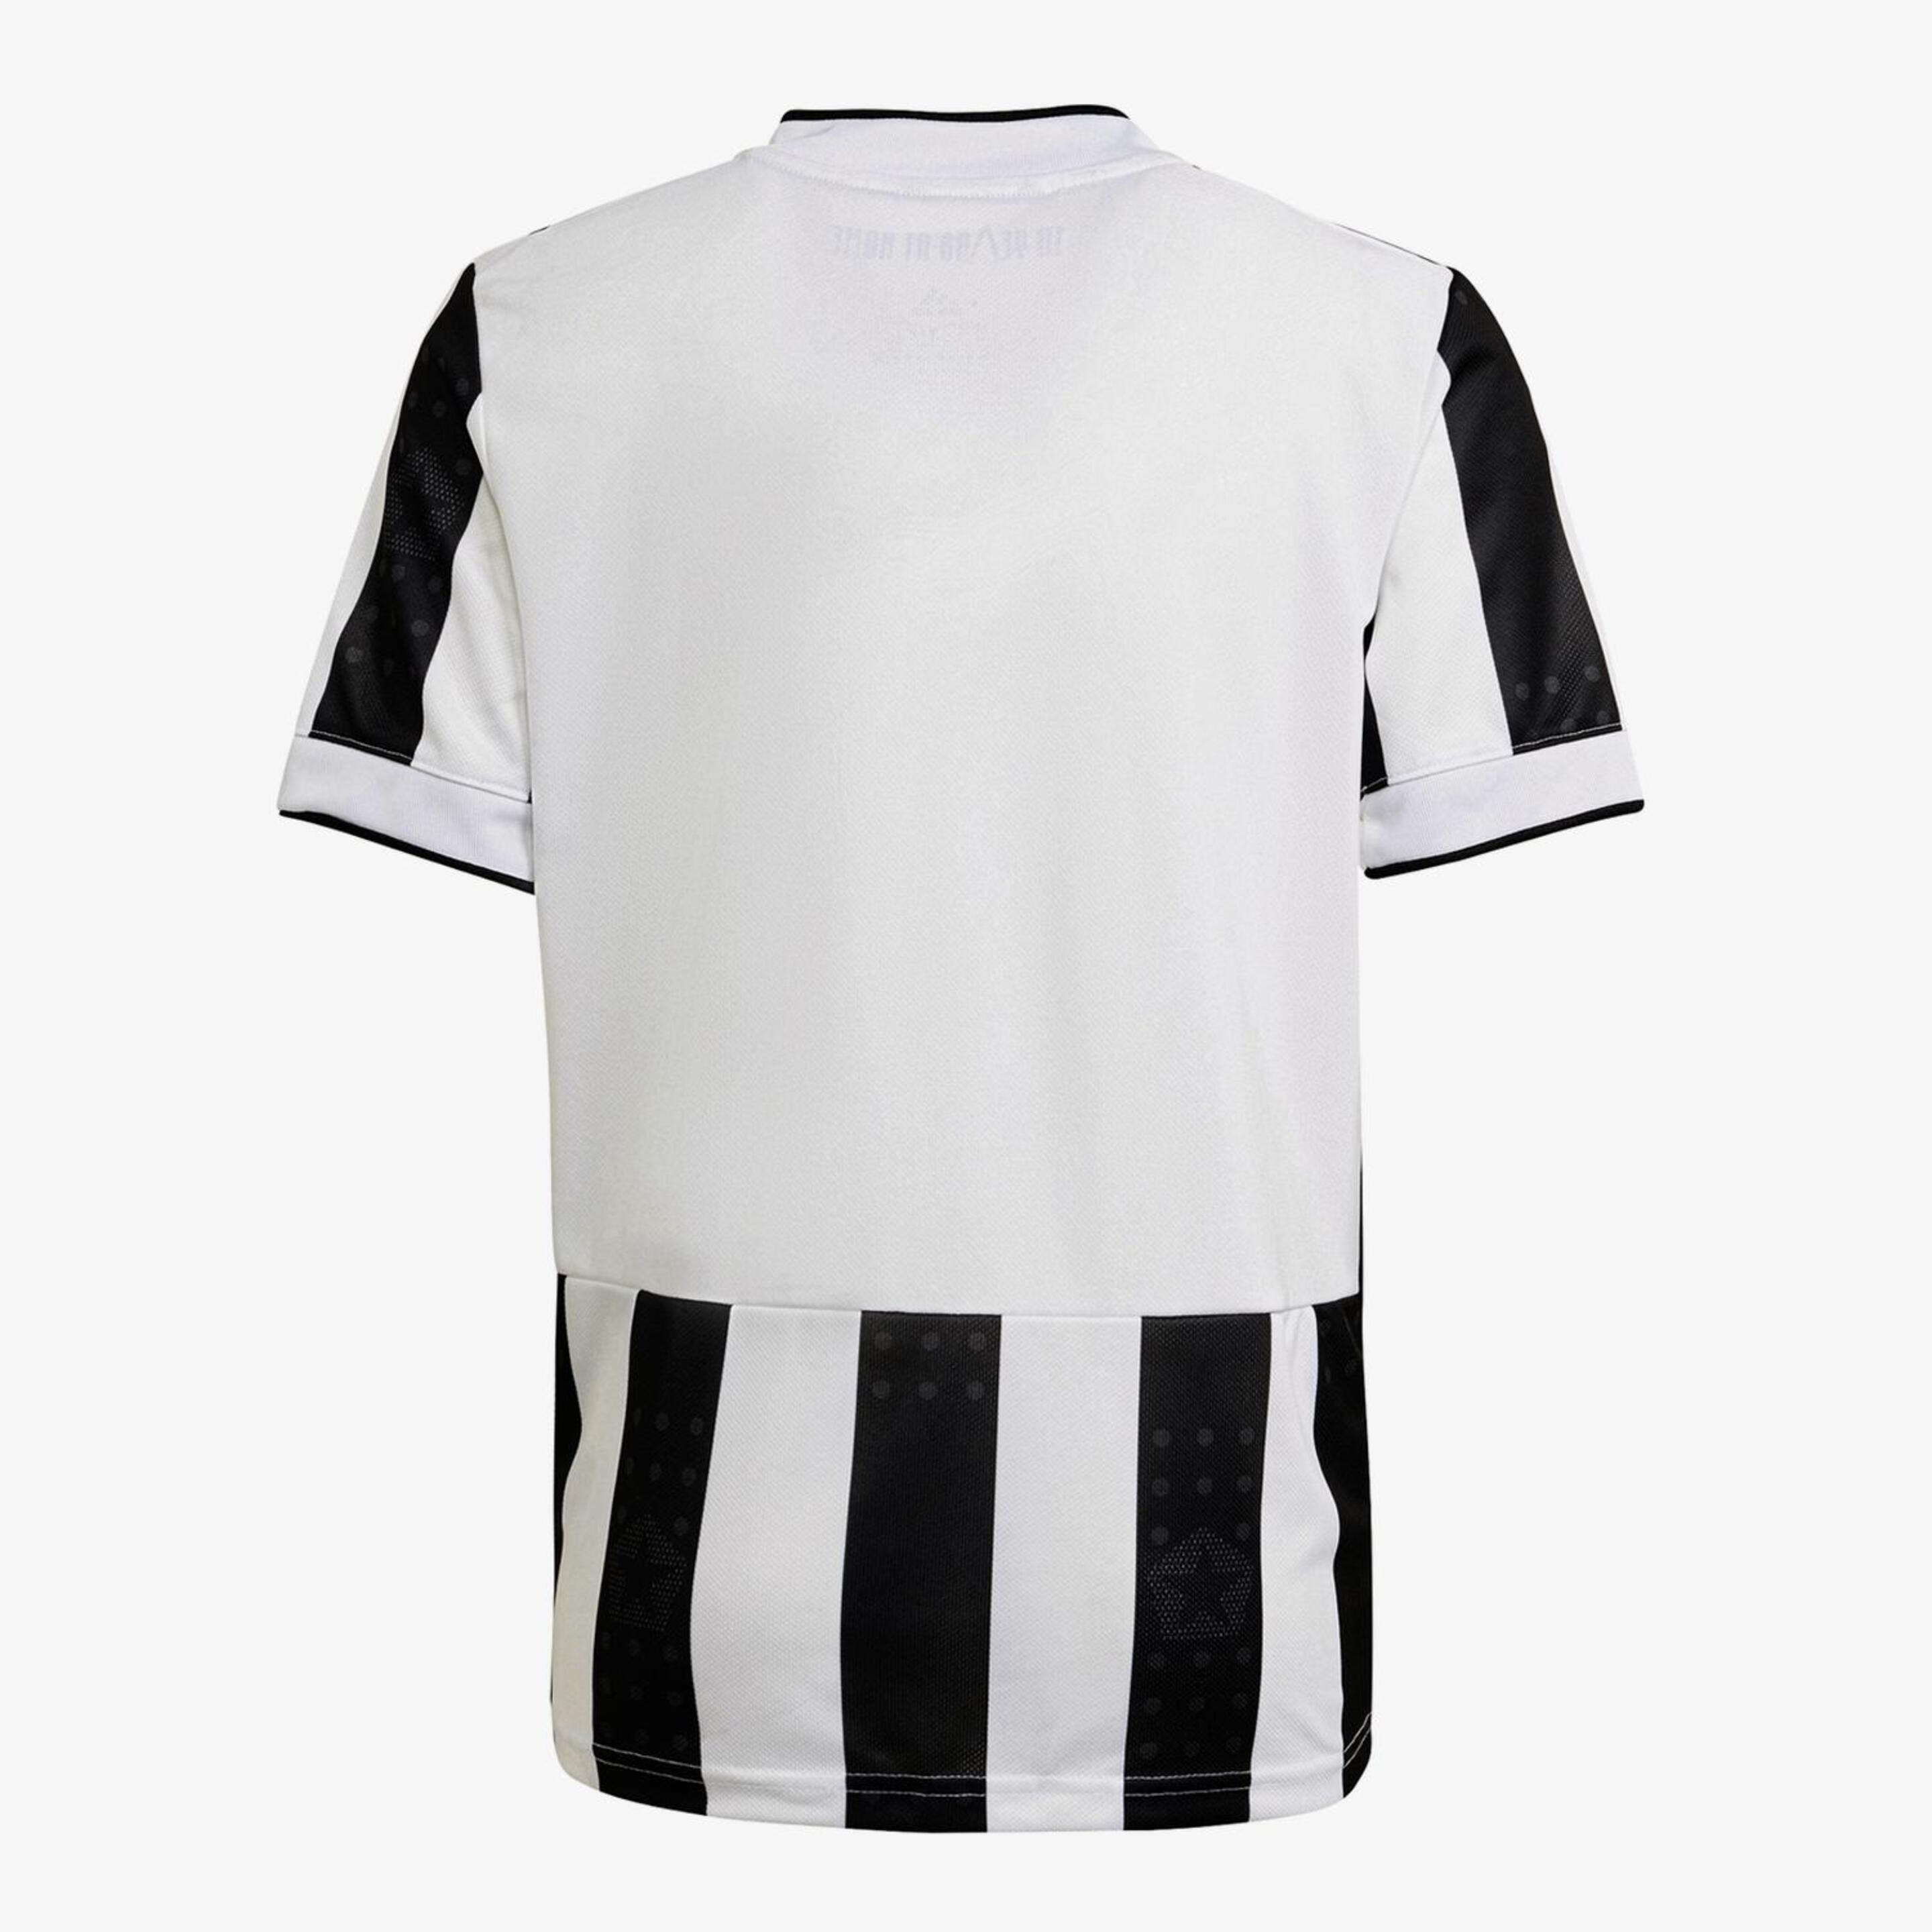 Camiseta Juventus